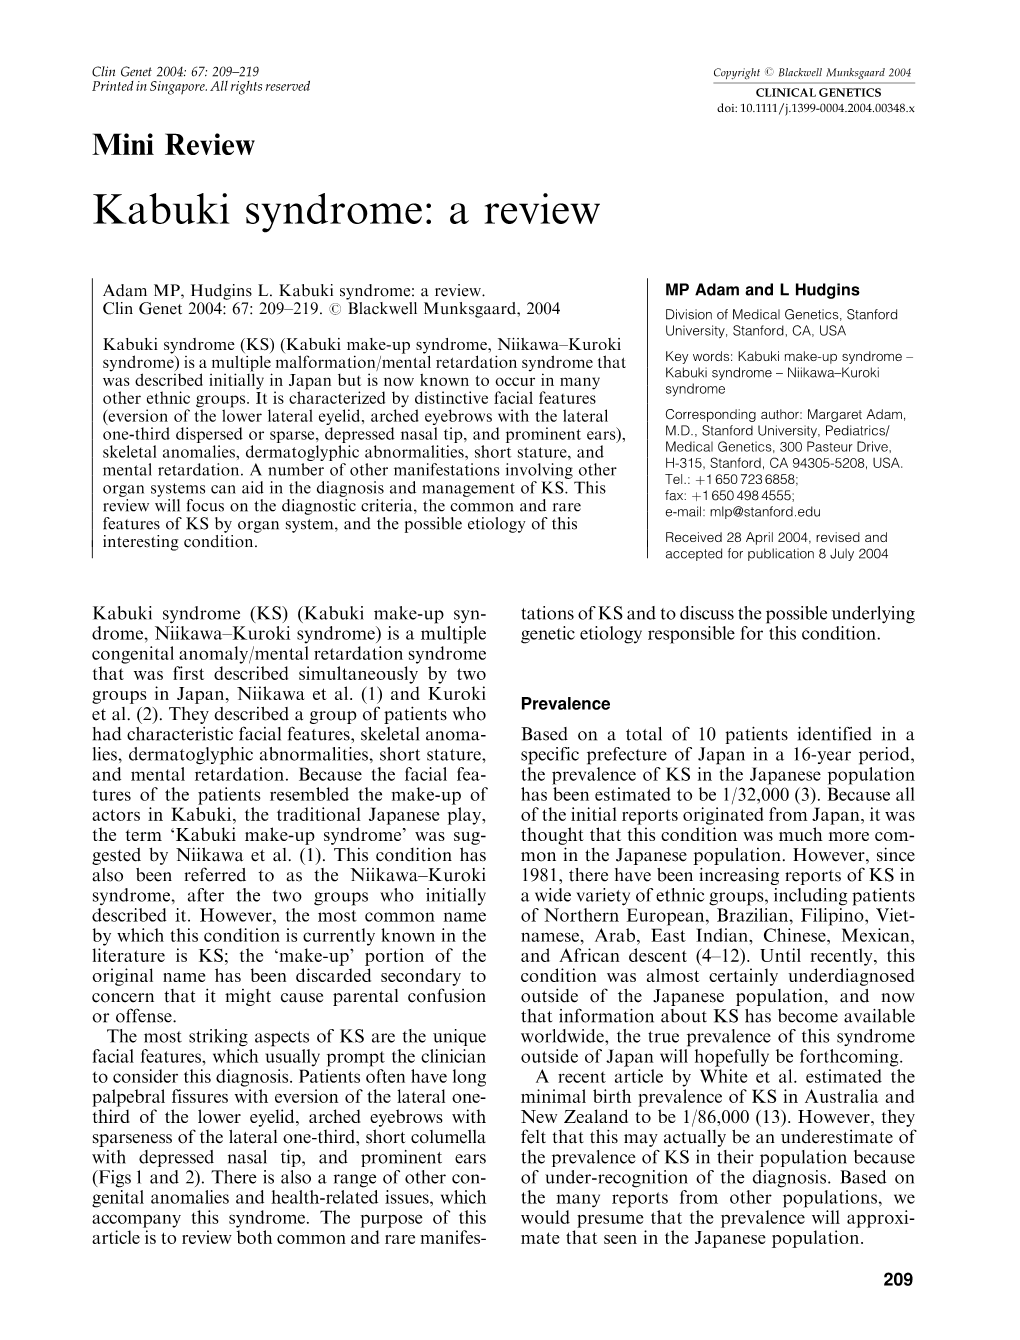 Kabuki Syndrome: a Review